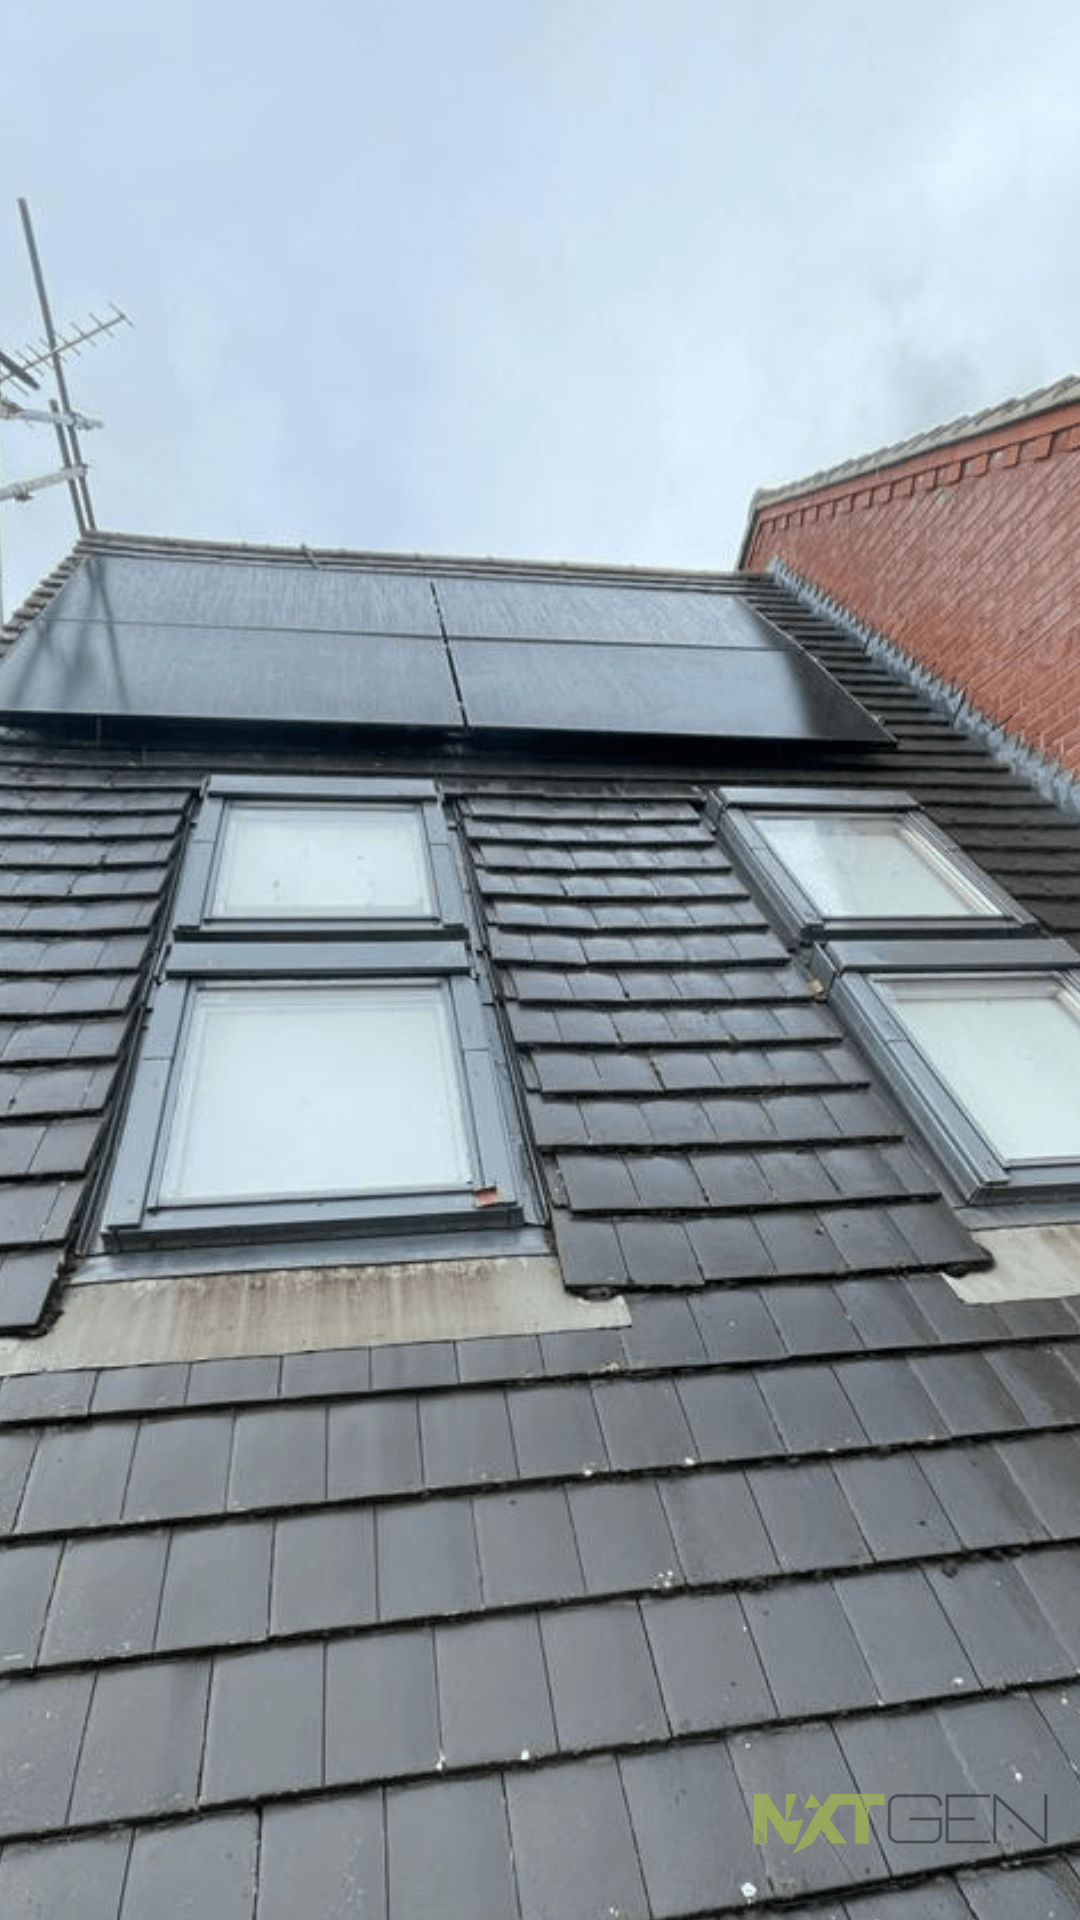 4 Solar Panels Install on Dormer Roof Photo